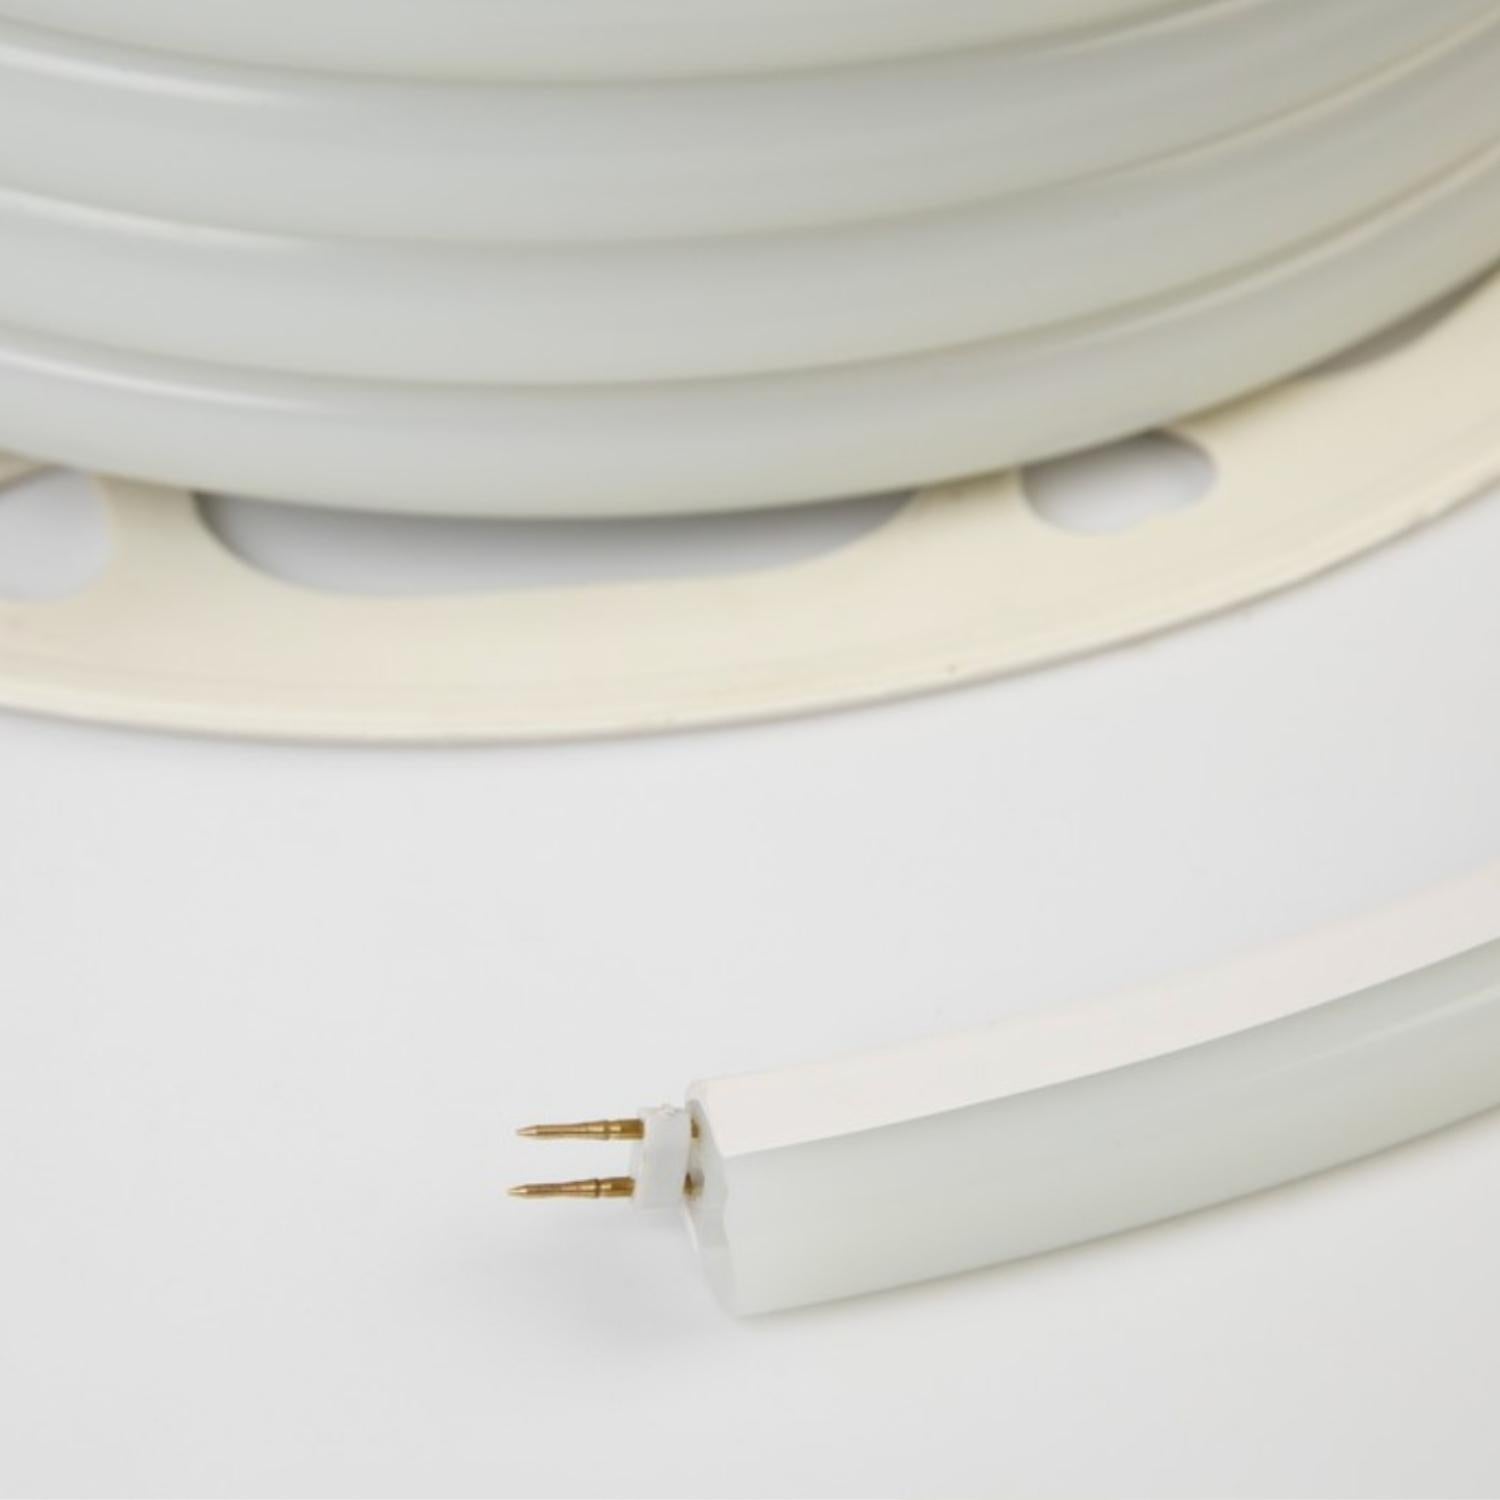 Warm White LED Neon Flex 16x16mm D Shape Vertical Bending 120LEDs/m 220V 240V IP67 Waterproof with UK Plug - ATOM LED